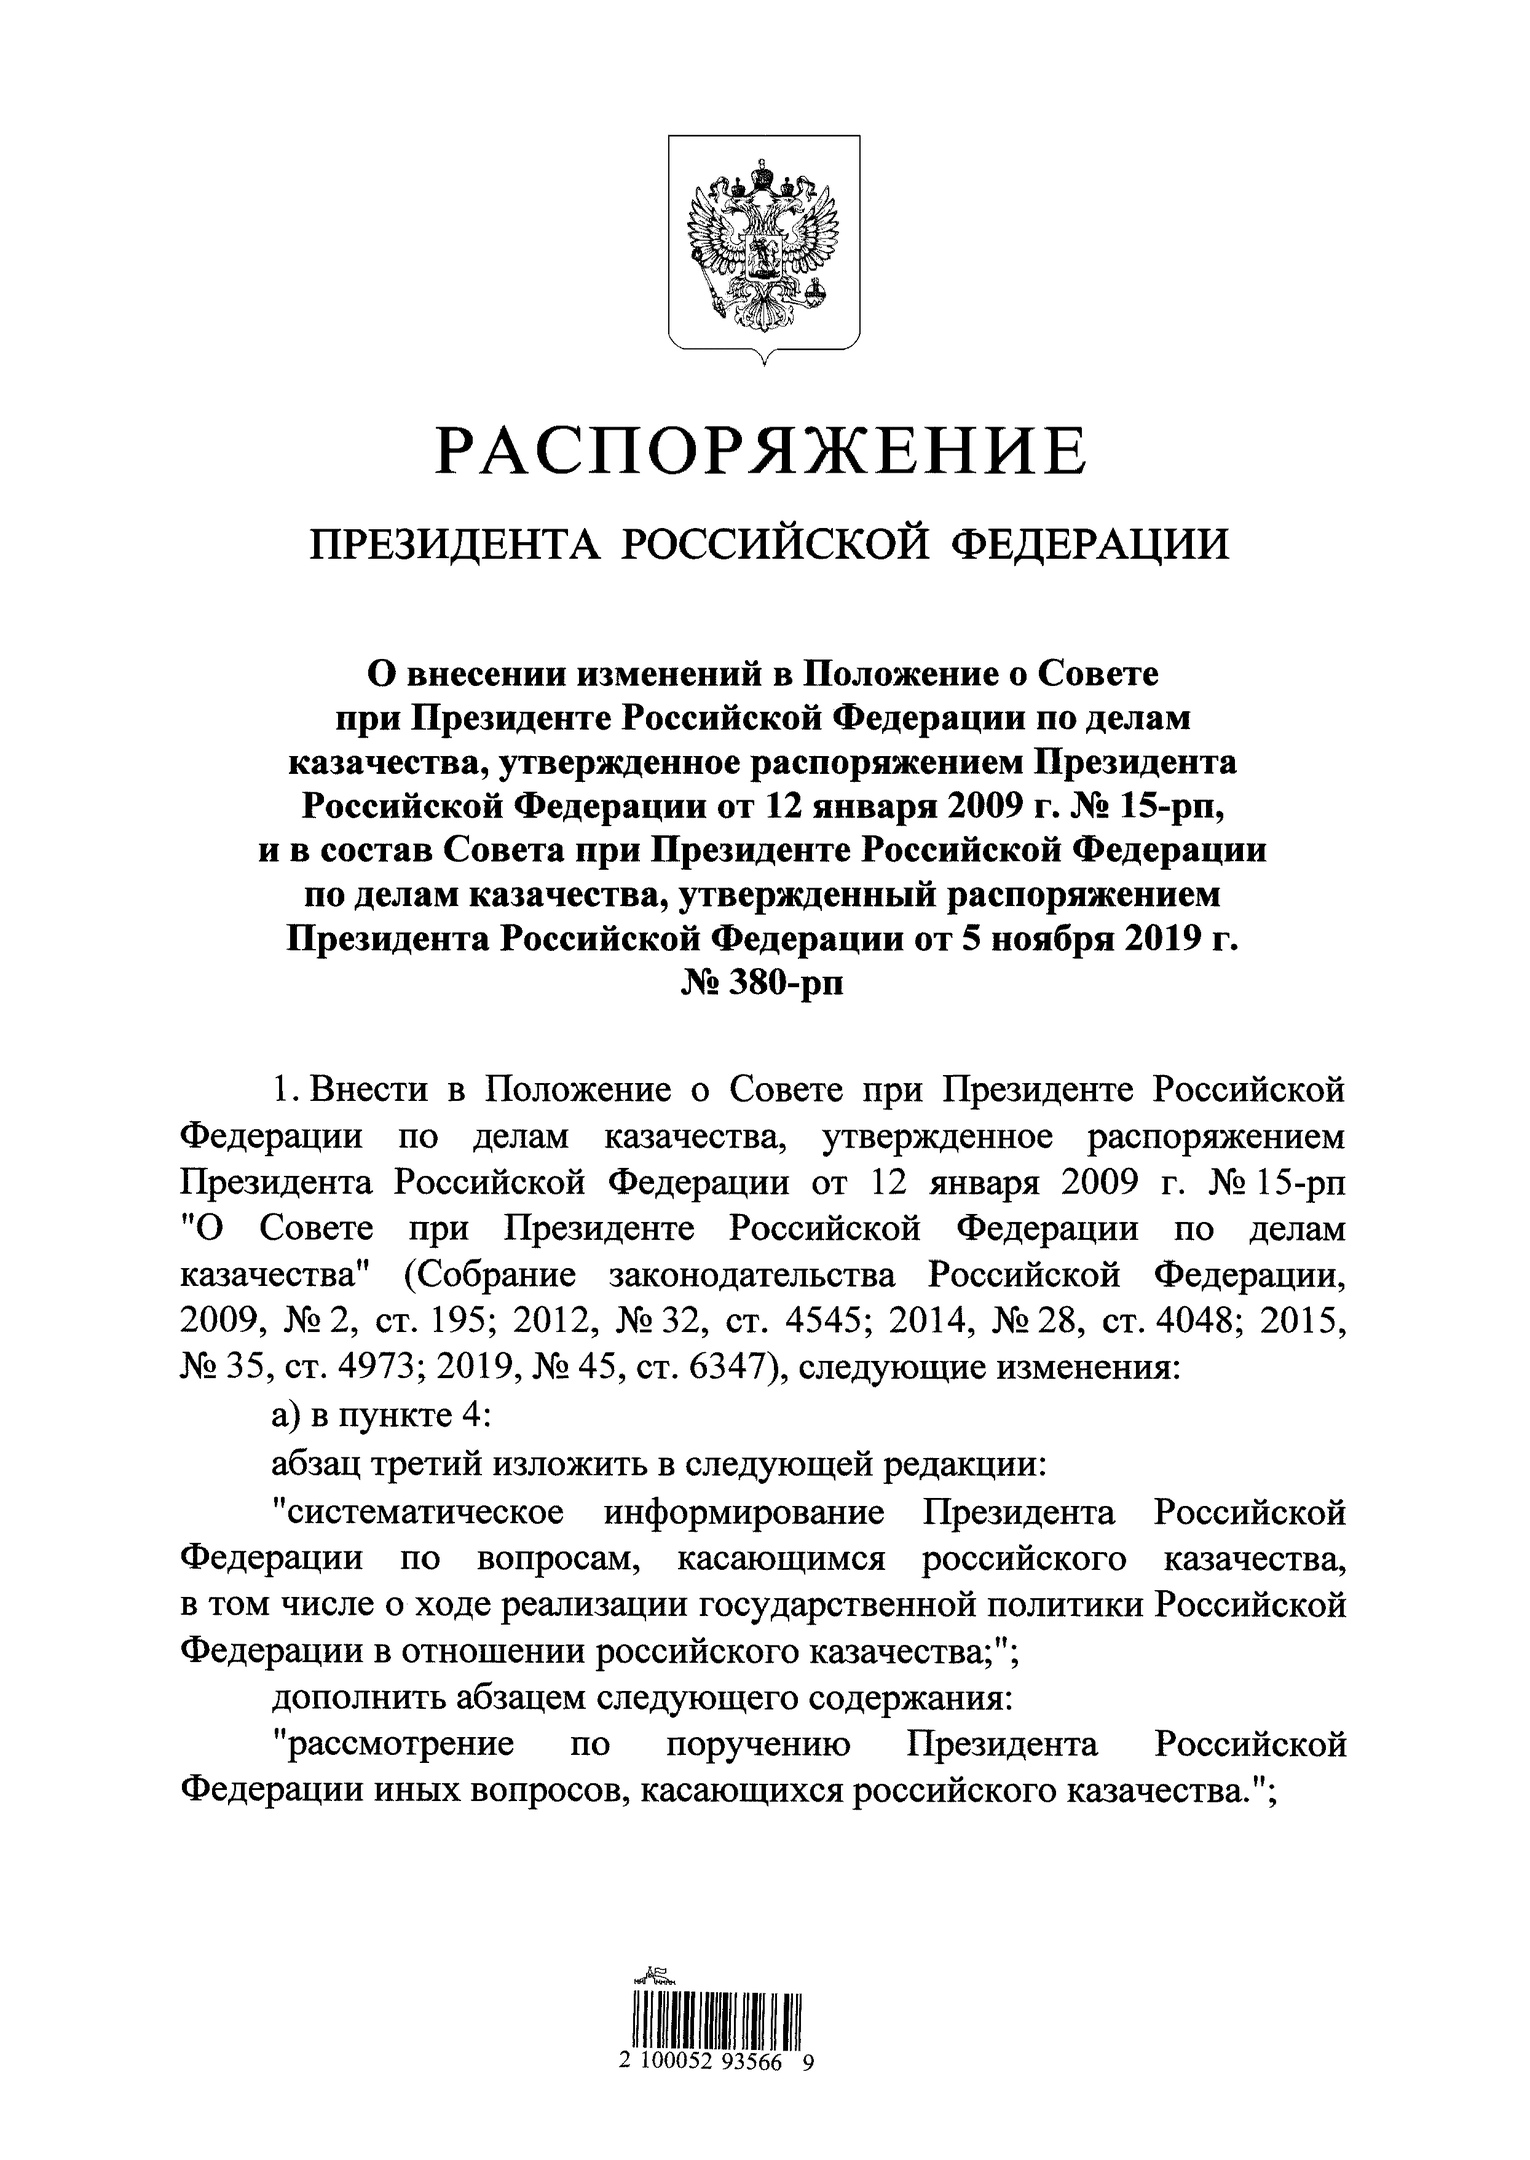 Внесены изменения в Положение о Совете при Президенте Российской Федерации по делам казачества